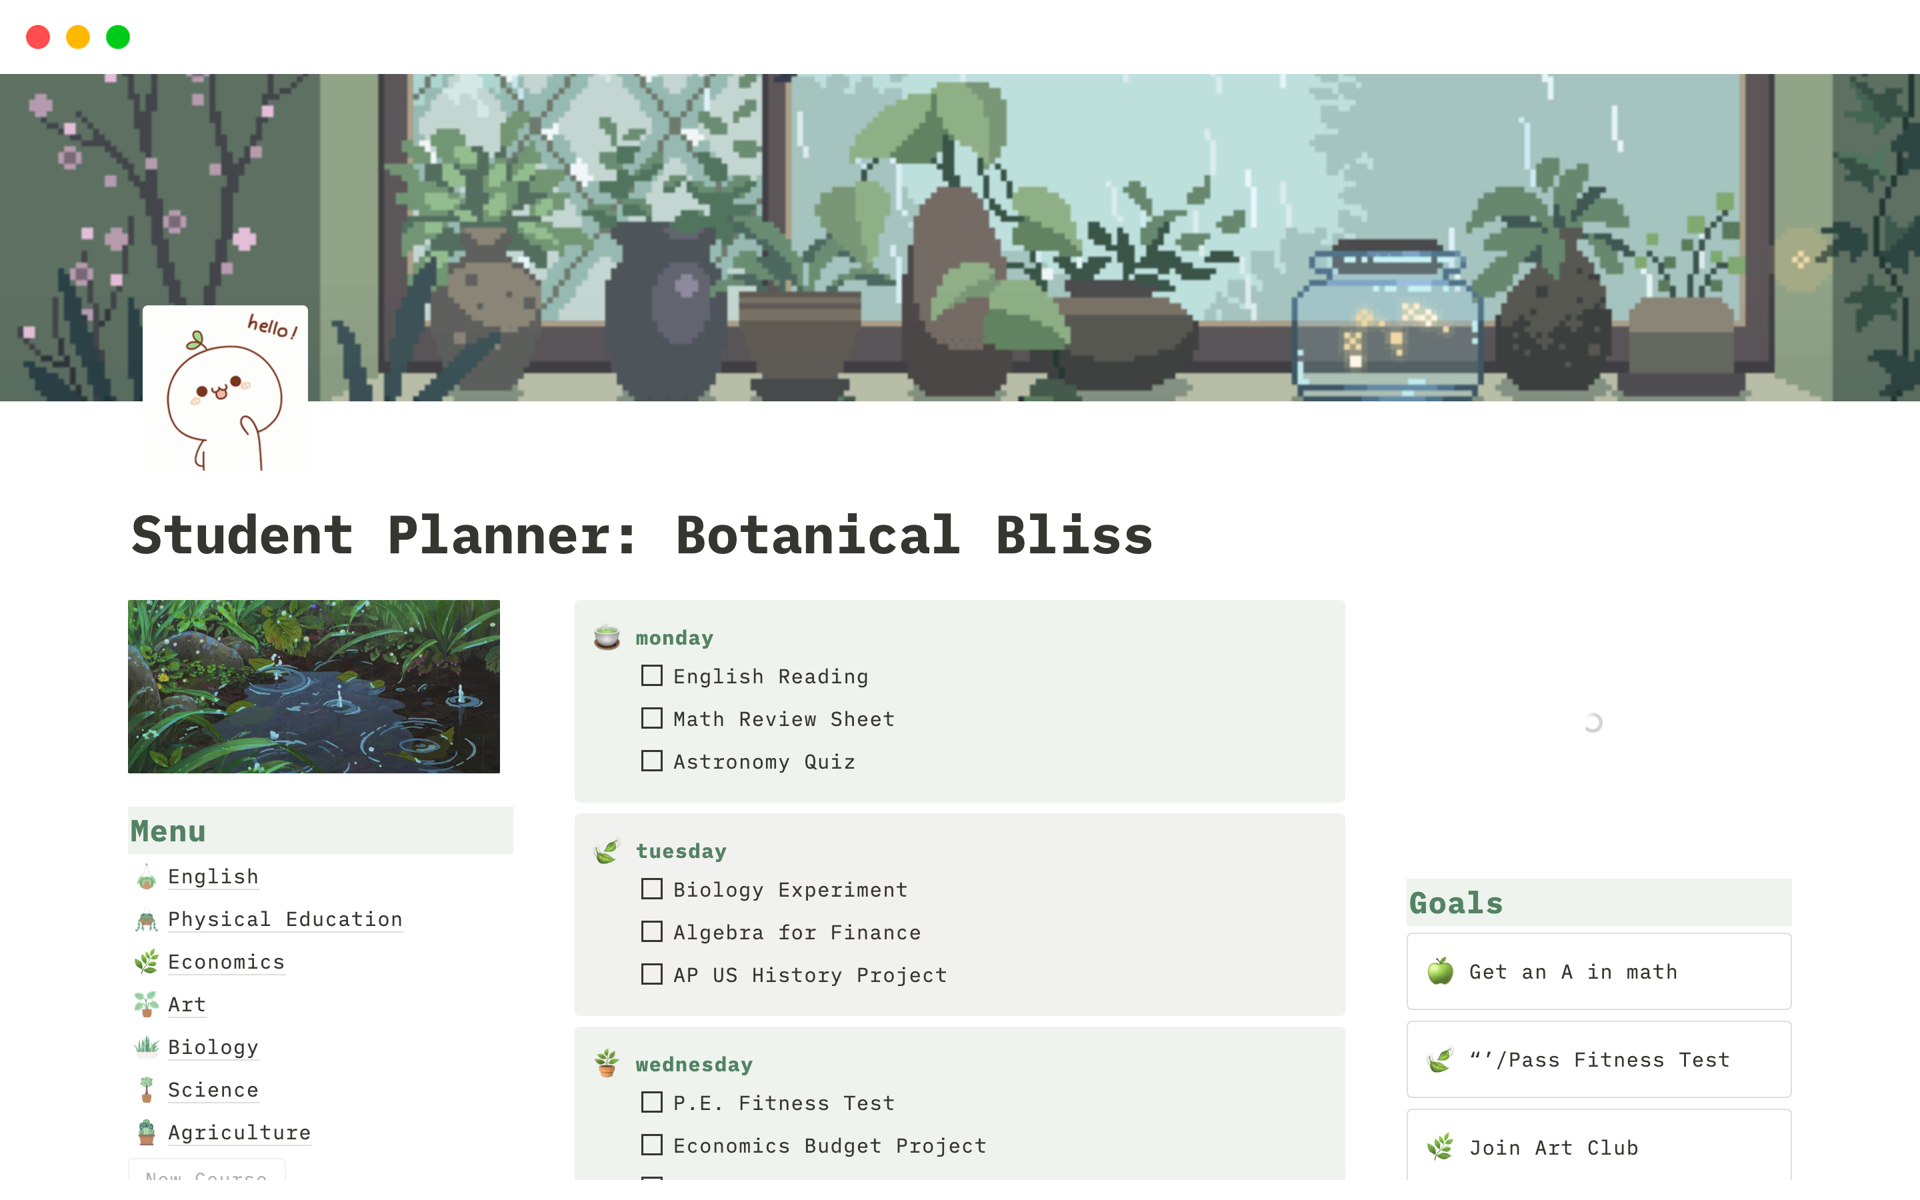 Uma prévia do modelo para Student Planner: Botanical Bliss